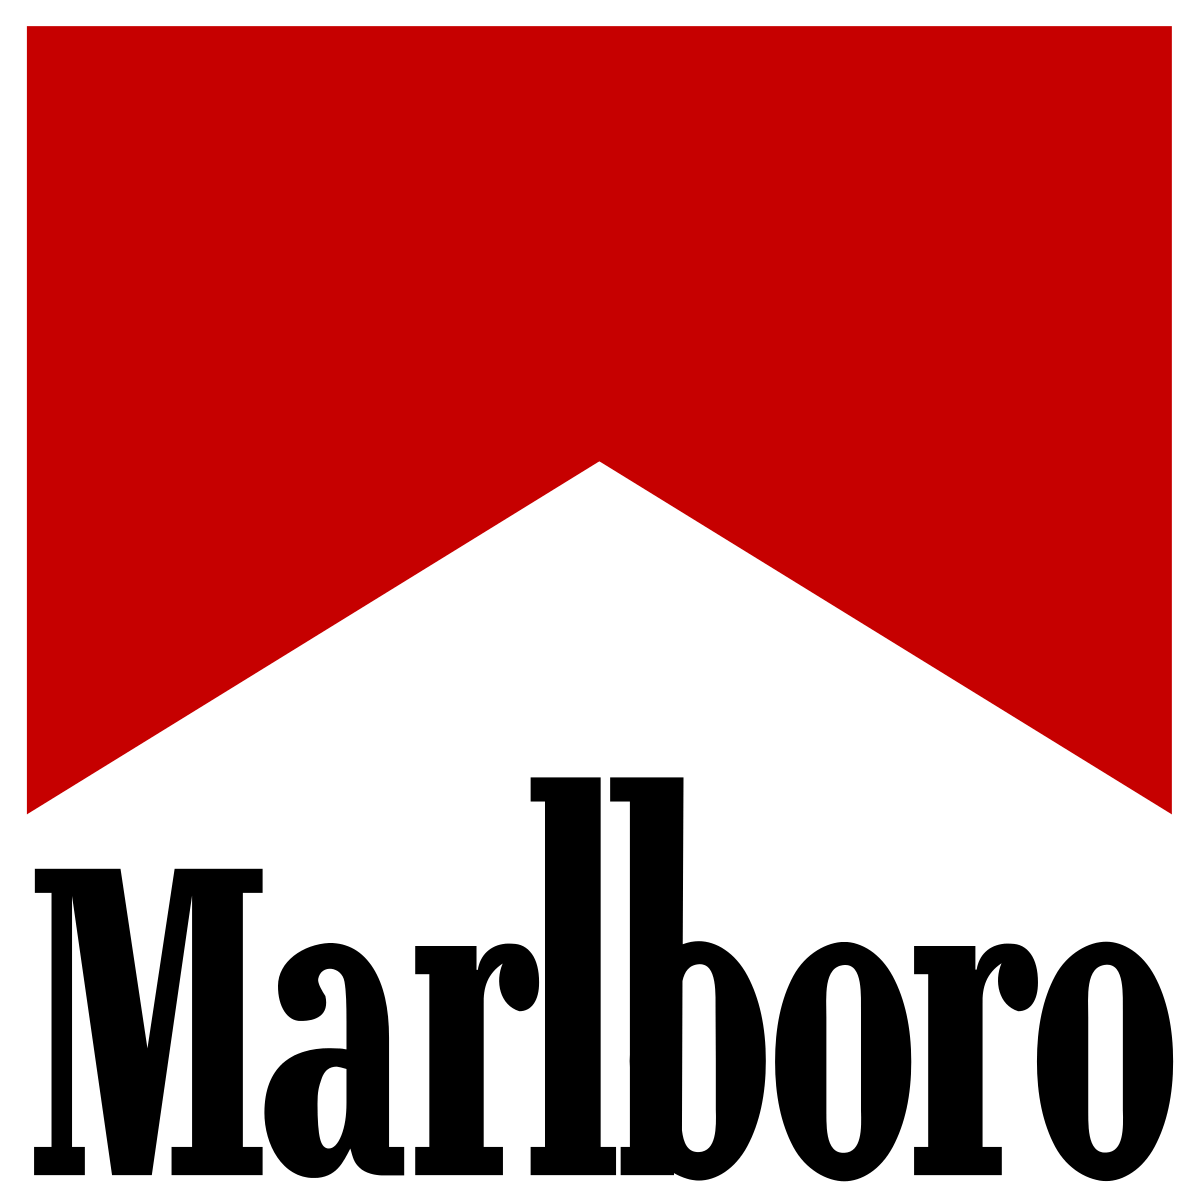 Cigarette Brand Logo - Marlboro (cigarette)